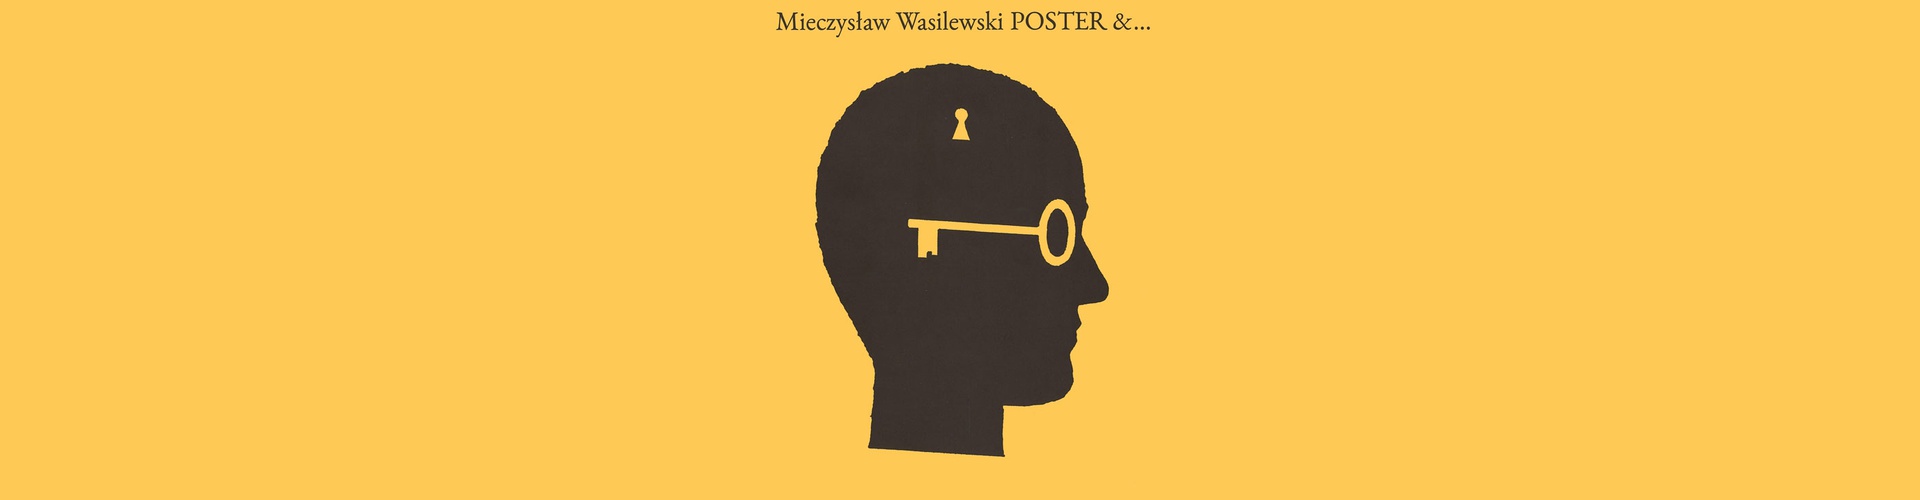 Gallery of Posters by Mieczysław Wasilewski-Poland